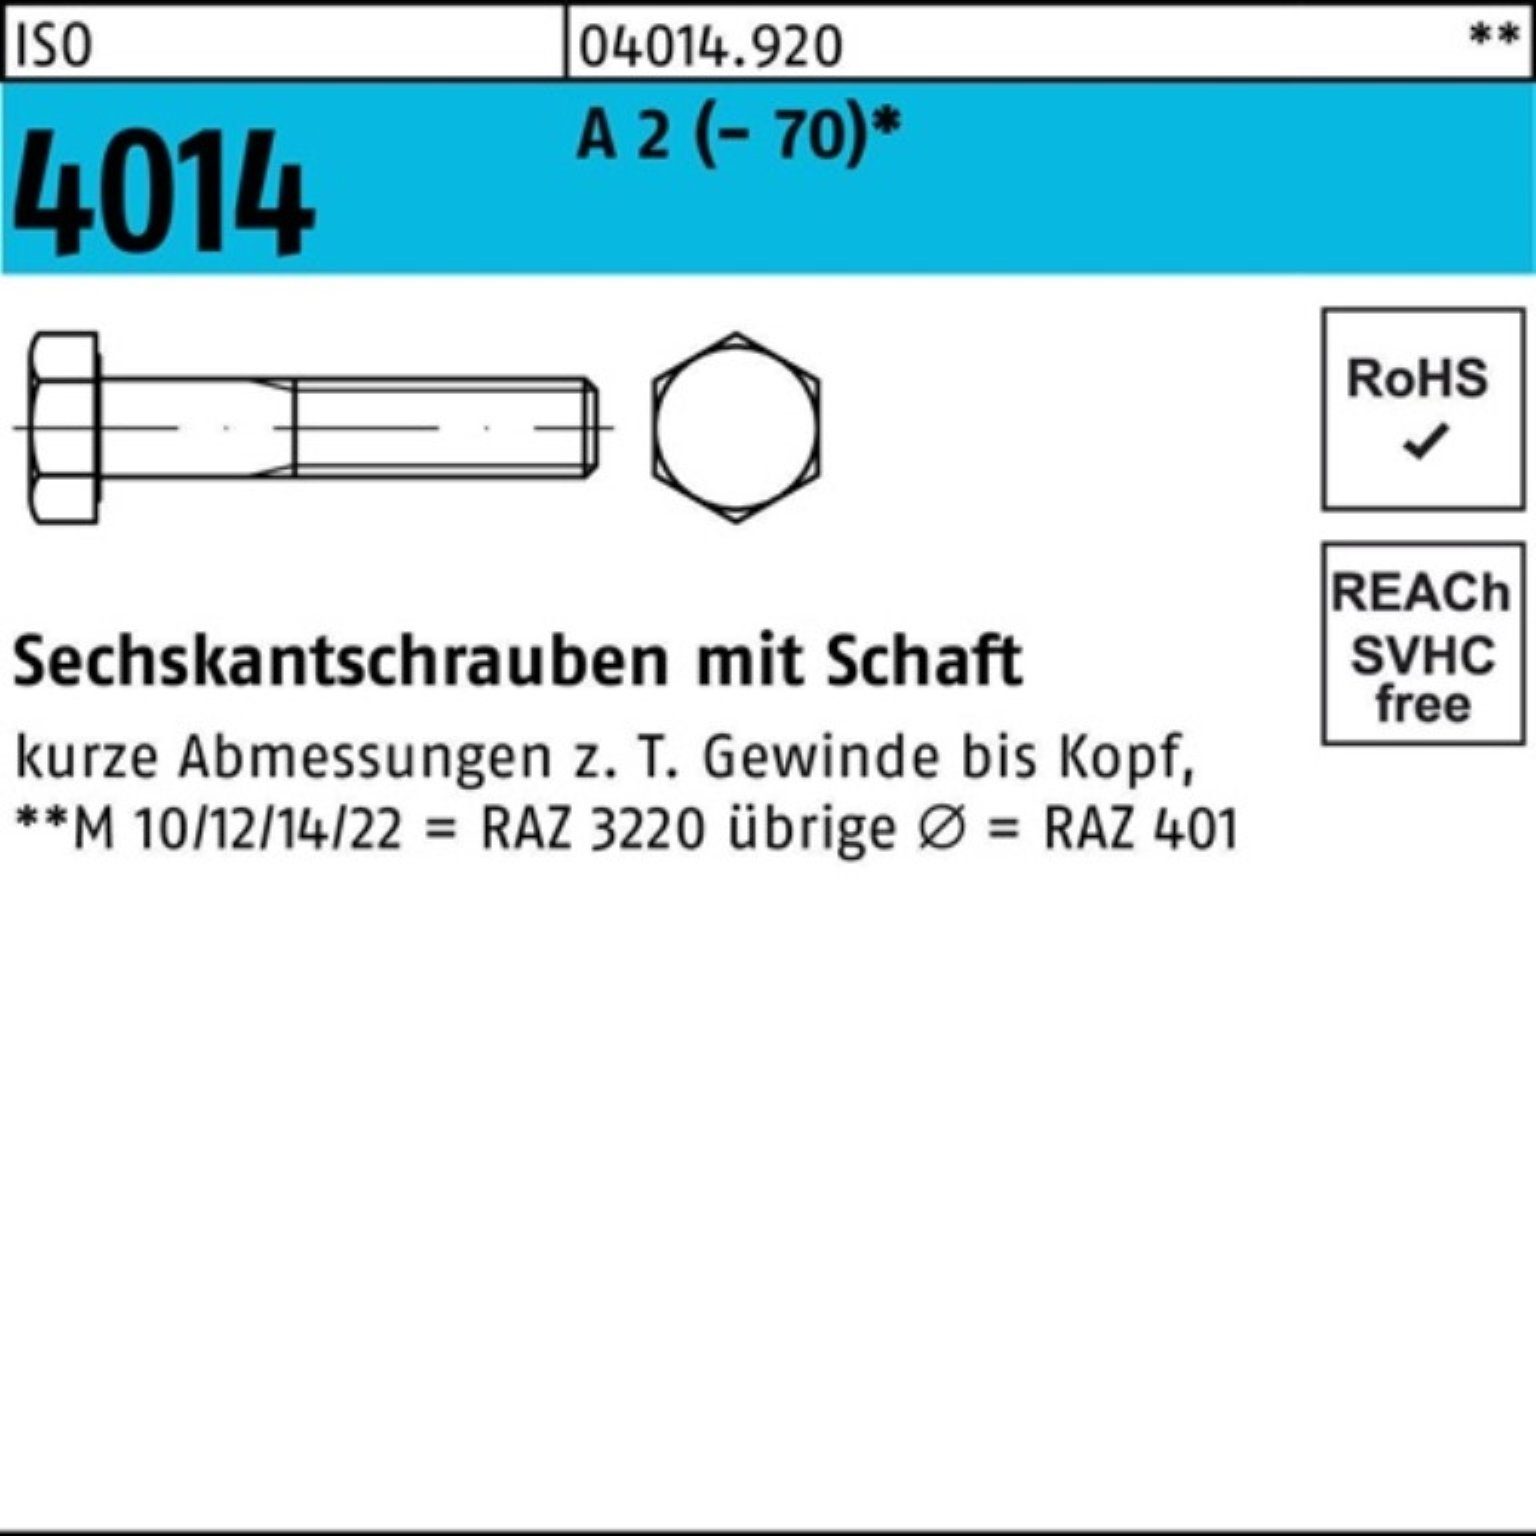 Bufab Sechskantschraube 100er Pack Sechskantschraube ISO 4014 Schaft M20x 70 A 2 (70) 1 Stü